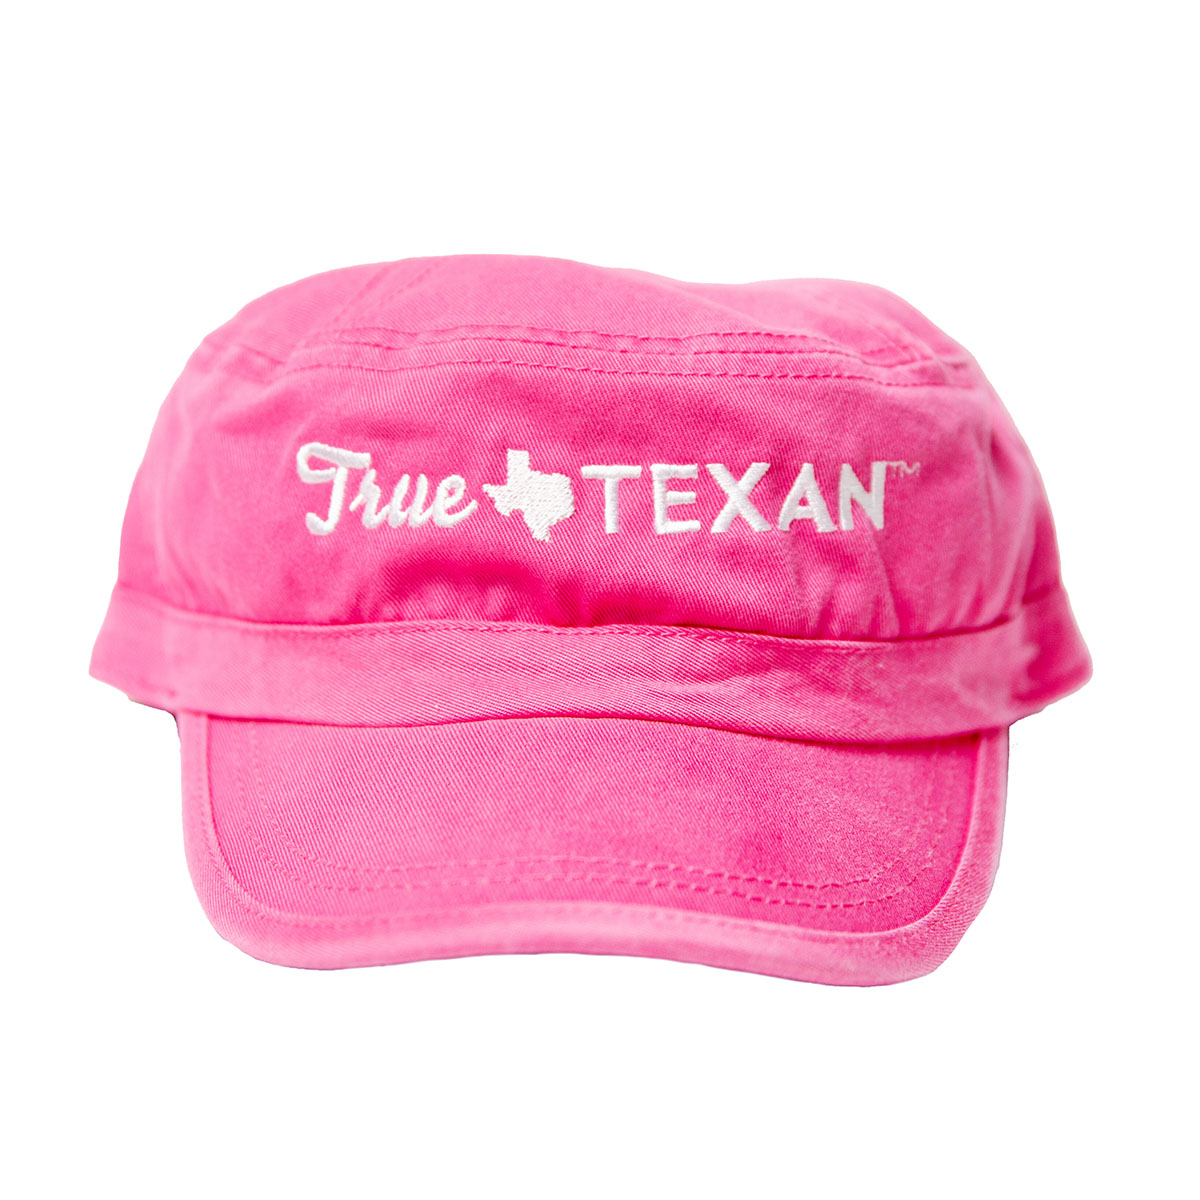 True Texan Patrol Cap - Hot Pink